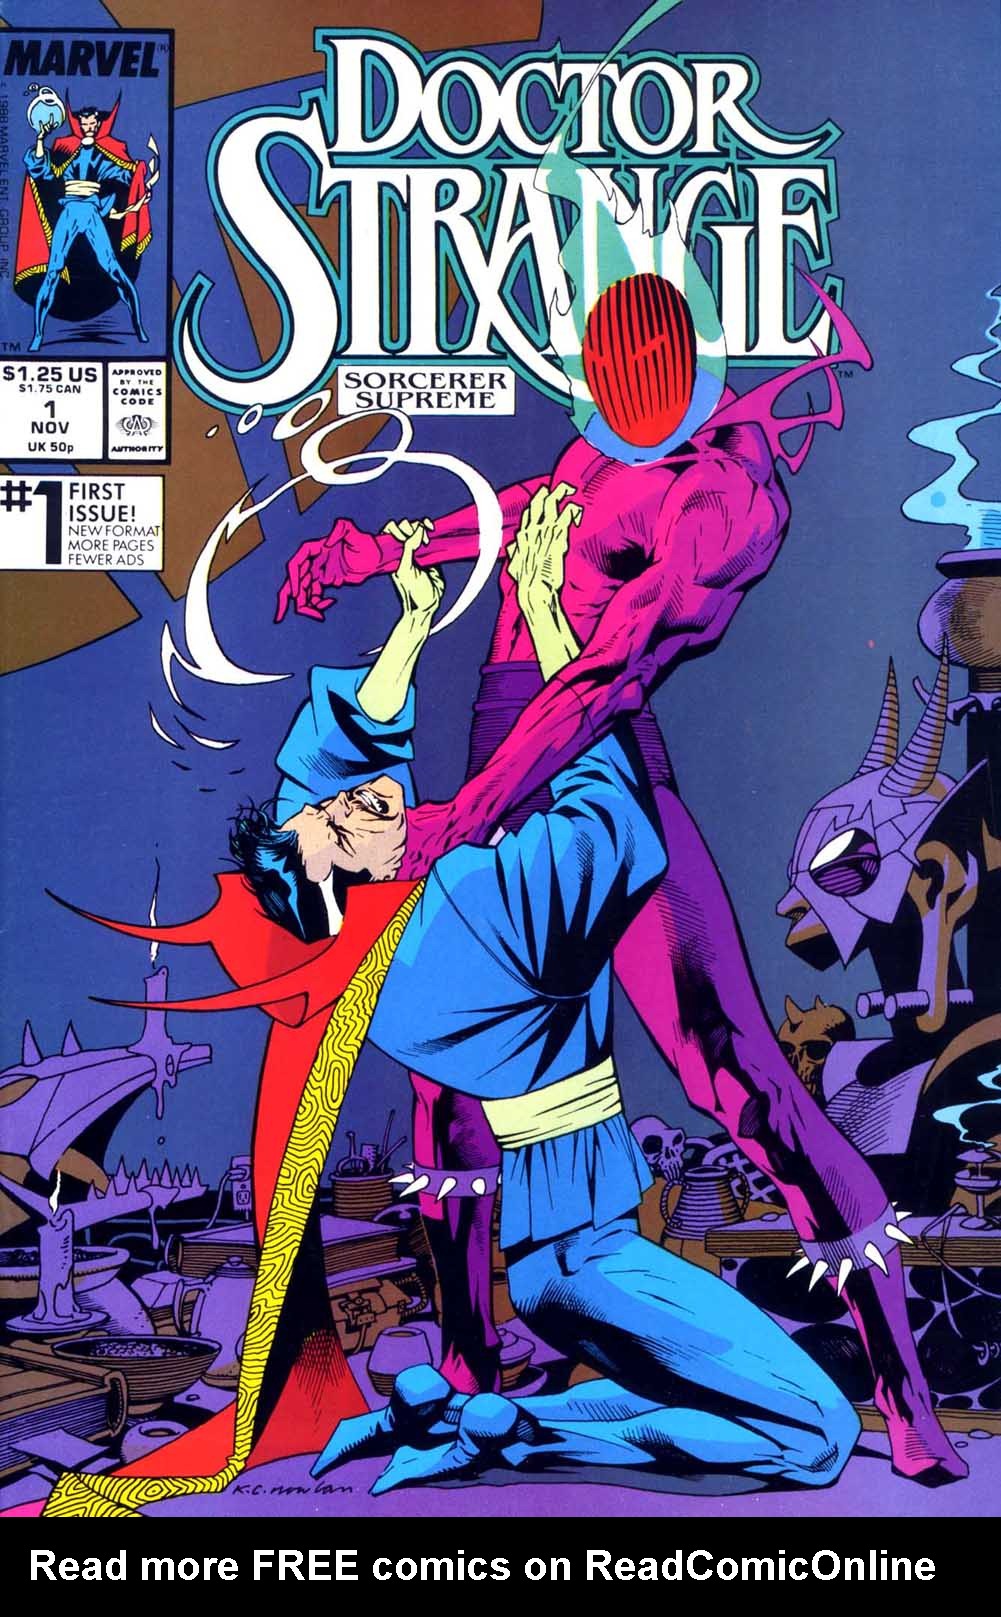 Read online Doctor Strange: Sorcerer Supreme comic -  Issue #1 - 1